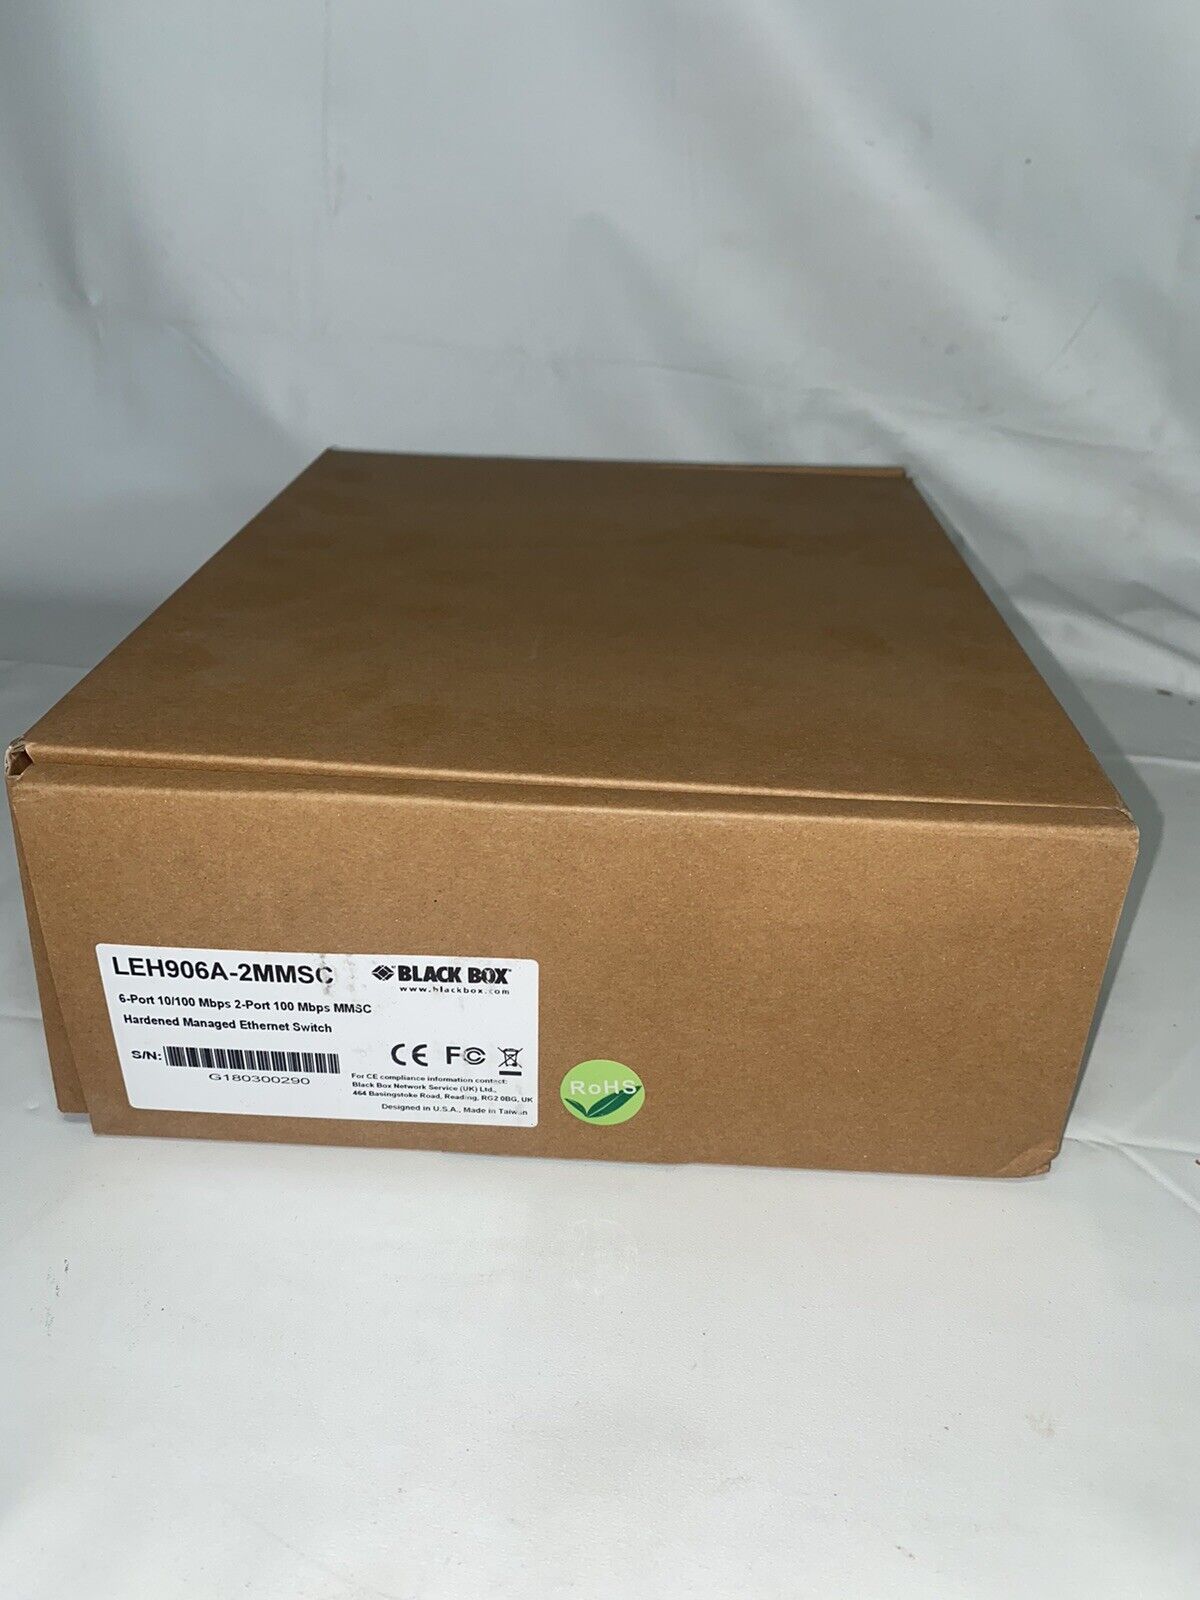 Black Box LEH906A-2MMSC, 6-Port 10/100 Mbps 2-Port 100 Mbps MMSC, New Open Box